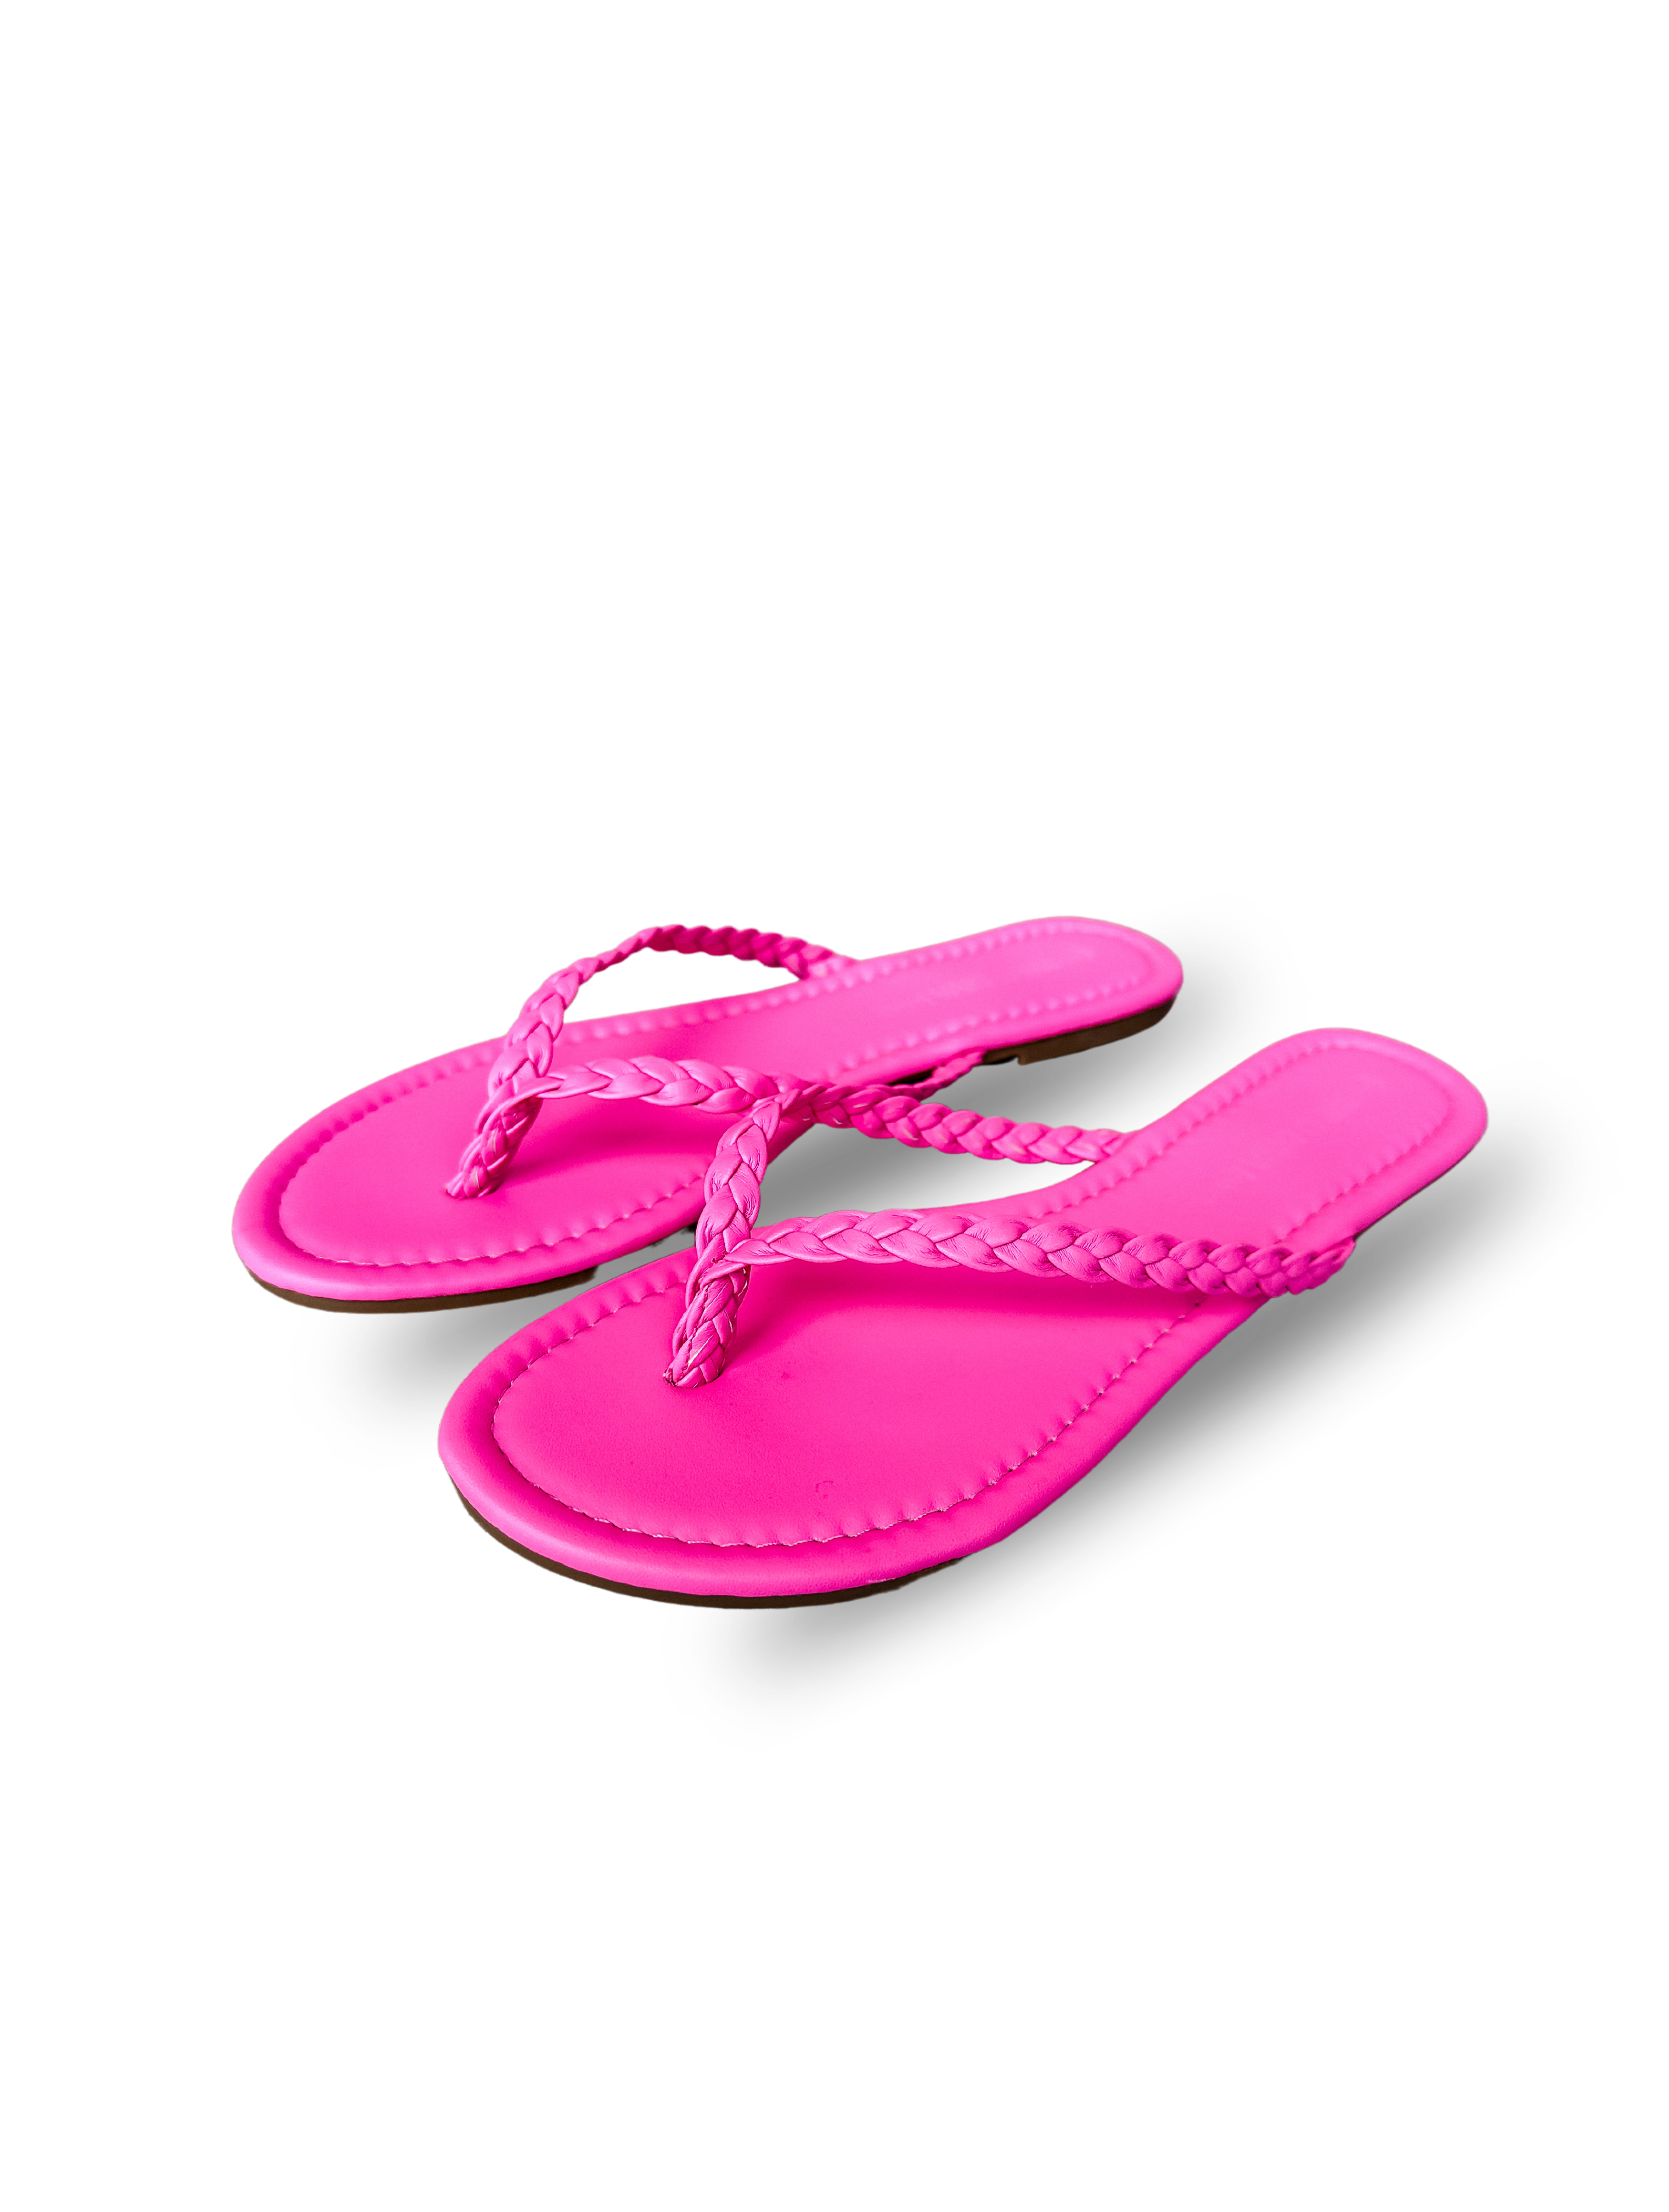 Bella Braided Flip-Flop Sandals-Hot Pink